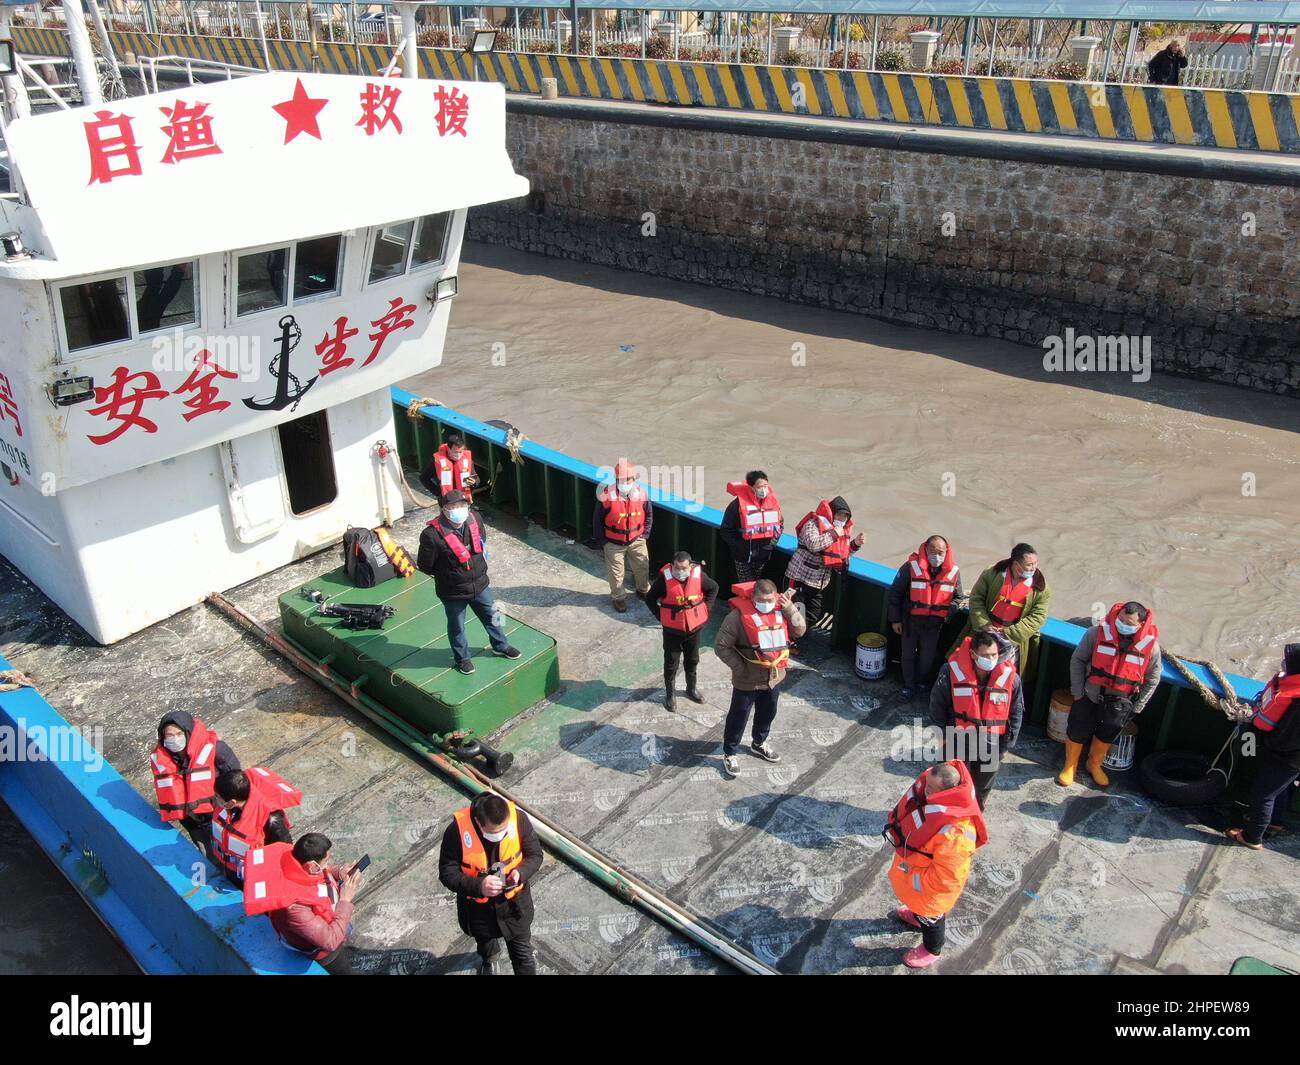 Qidong, Qidong, China. 21st. Februar 2022. Am Mittag des 21. Februar 2022 trafen 16 Fischer aus Fujian, die in den Gewässern des Gelben Meeres in Jiangsu gerettet wurden, sicher auf dem Qidong-Rettungsboot im Fischerhafen Qidong Lusi ein. Laut einer vom Qidong Municipal Bureau of Agriculture and Rural Affairs veröffentlichten Unterweisung, drohte am 19. Februar gegen 22:00 Uhr das Fischerboot Minlian Fishing Transport 60778, etwa 120 Seemeilen östlich des Huangsha Hafens in Sheyang zu sinken und zu sinken. Vier Fischerboote, darunter Su Qiyu 02266 und Su Qiyu 02211 von Qidong National Stockfoto